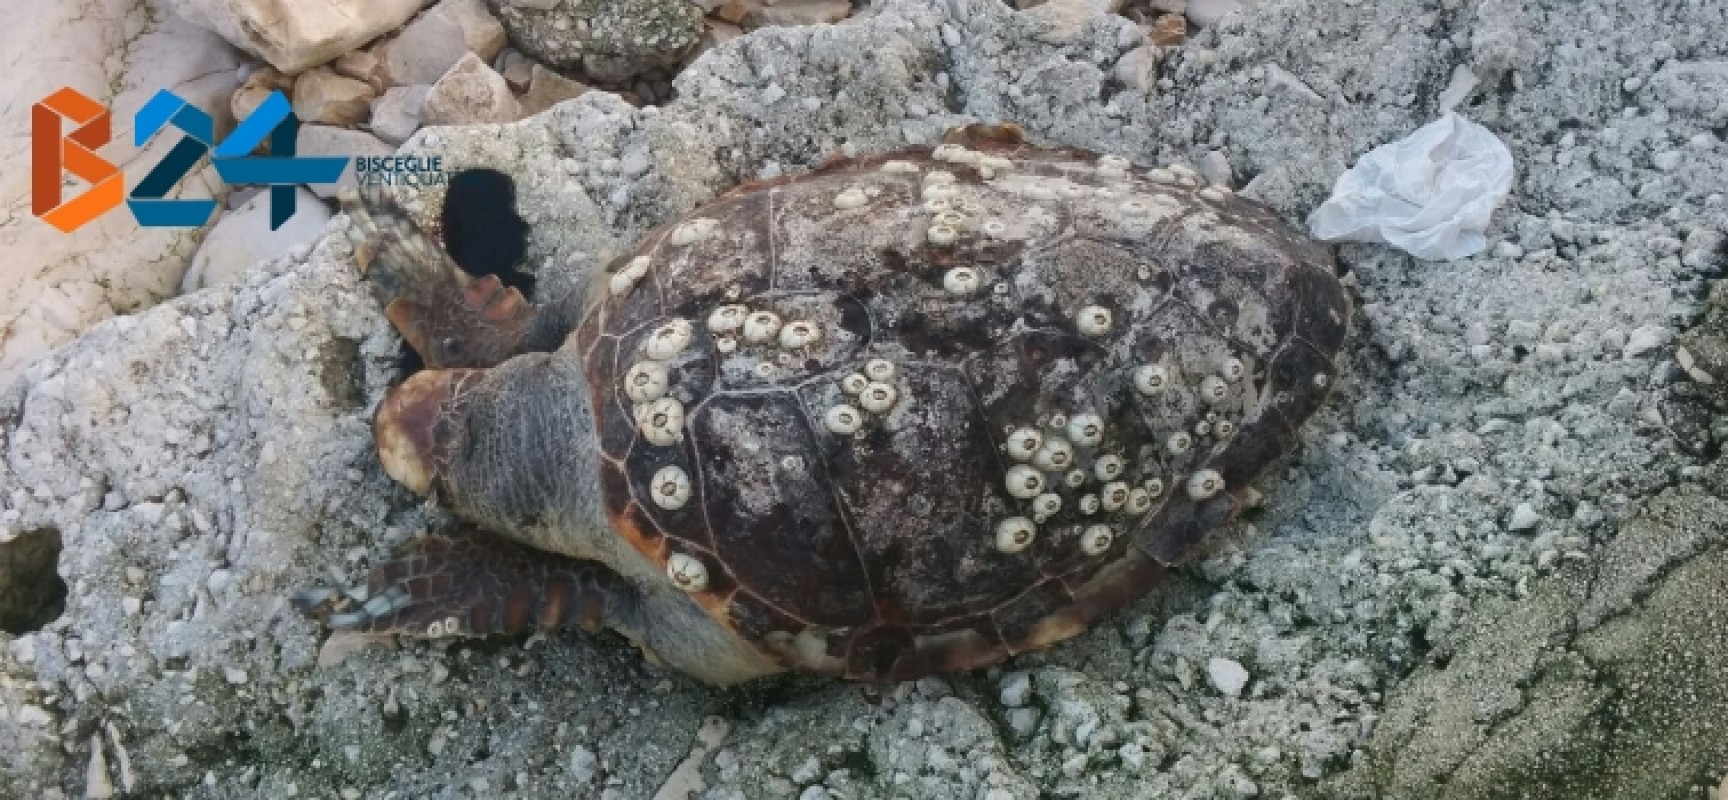 Ritrovata ieri mattina carcassa di tartaruga nella zona di levante